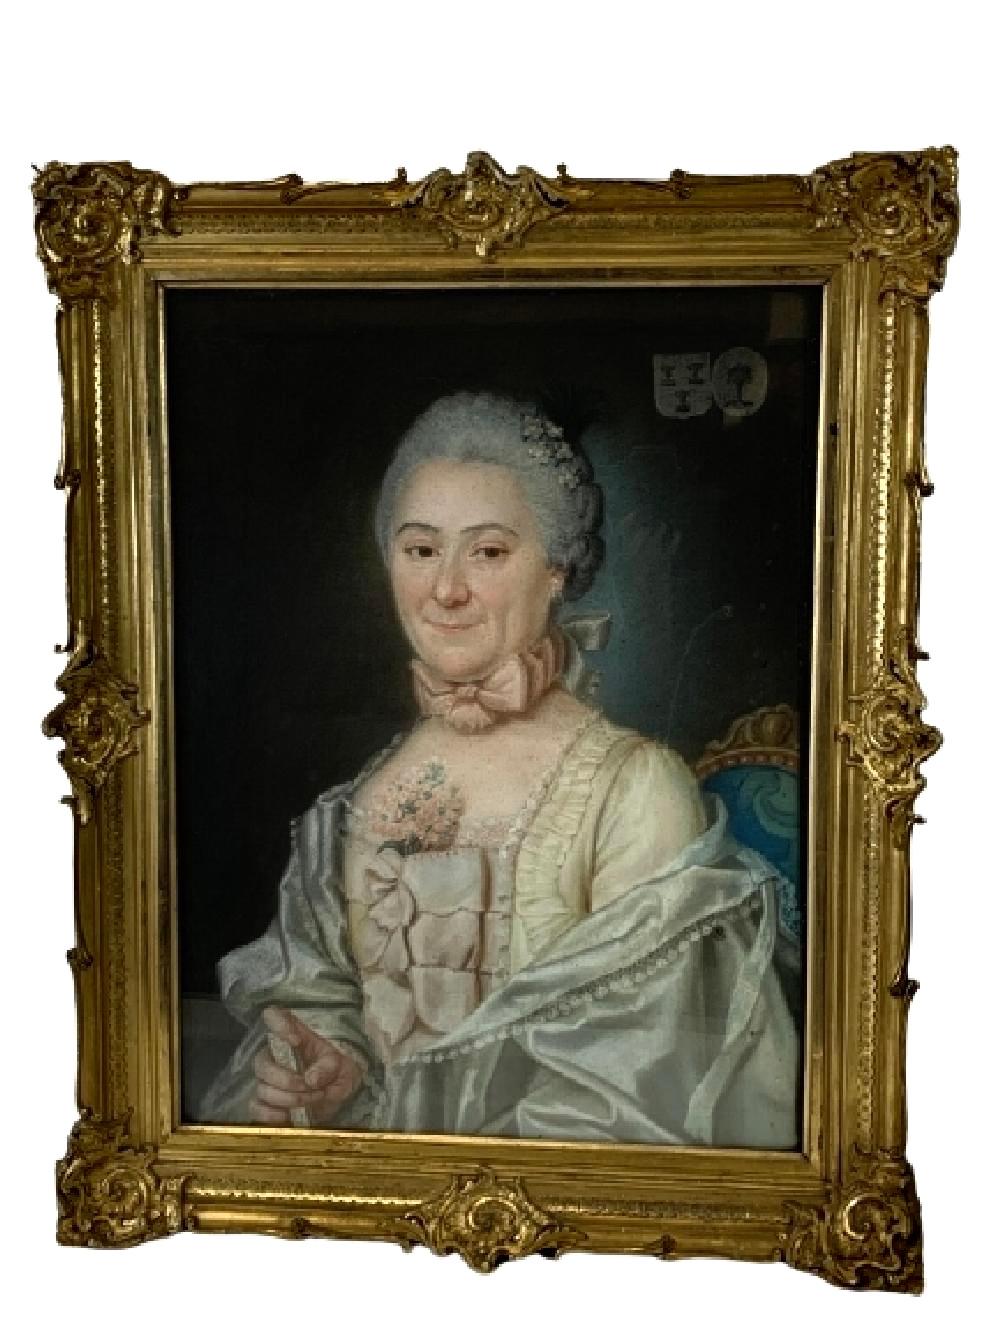 Zwei gerahmte Pastellporträts französischer Aristokraten, signiert und datiert von Charles Nicolas Noel, 1765

Der Gentleman in aristokratischer Kleidung und mit einem wichtigen Dokument in der Hand. Die Dame mit dem aristokratischen Kleid. Jedes